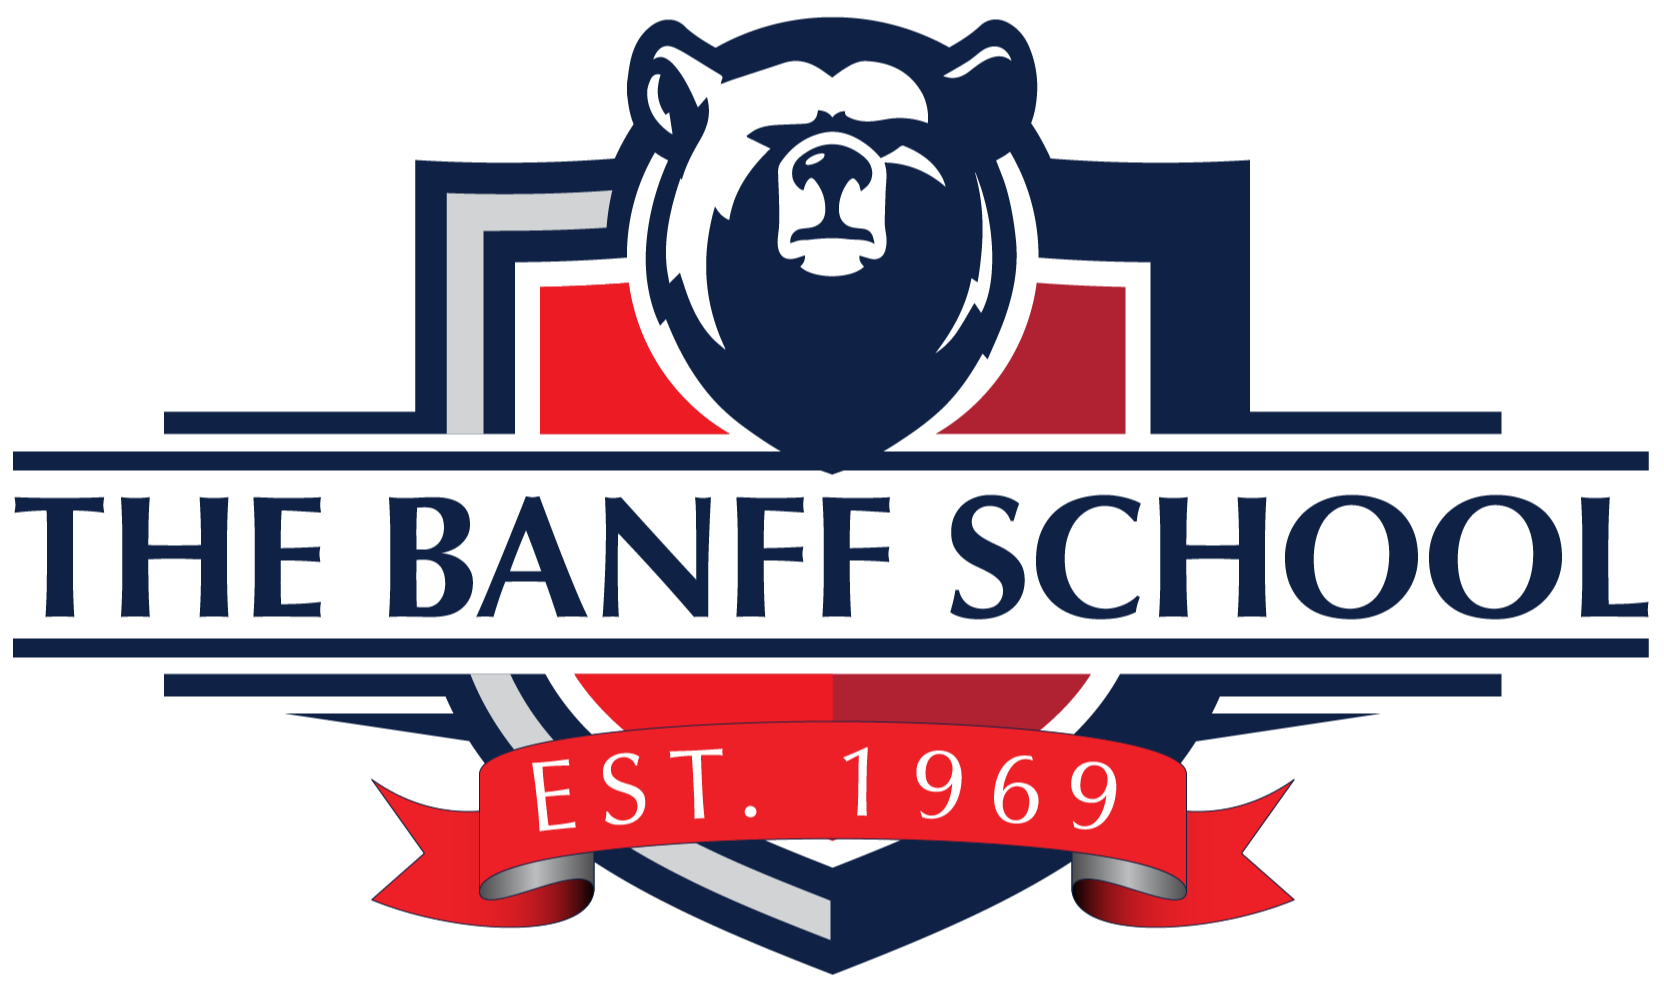 The Banff School logo